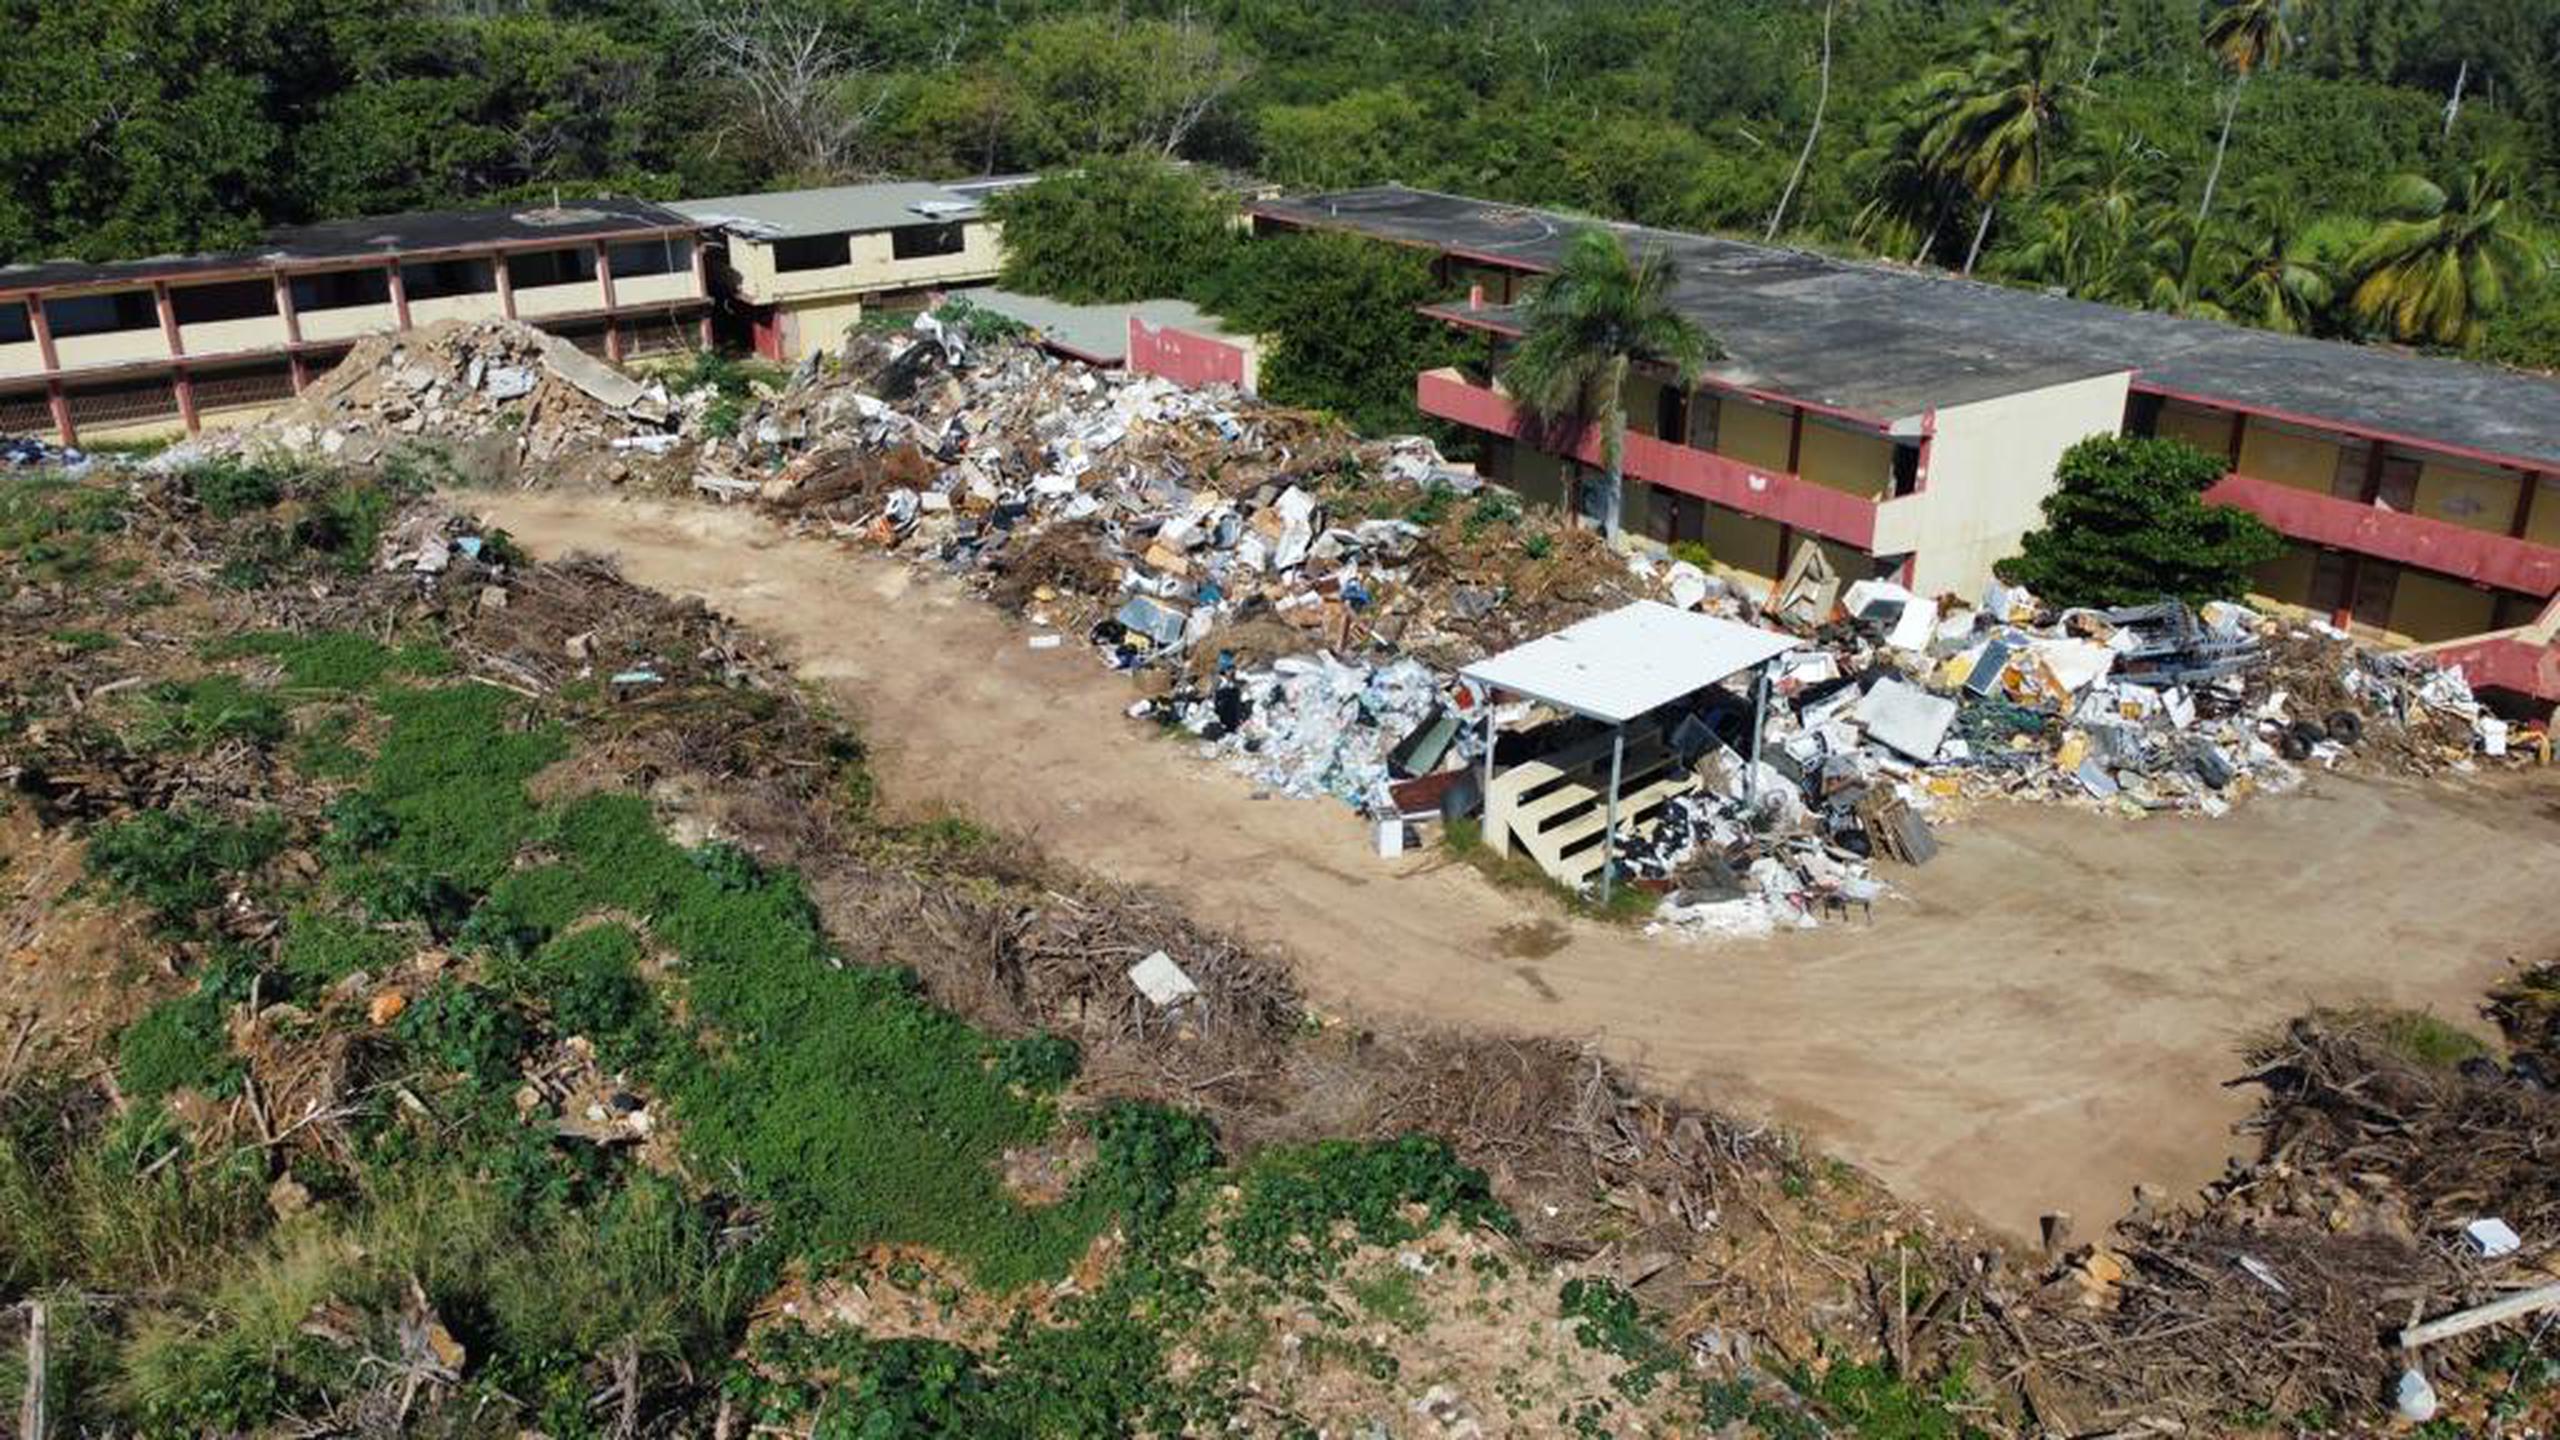 Los residentes del pueblo de Camuy, en especial los que viven en el área urbana y específicamente en los alrededores de la antigua escuela Pablo Ávila, denunciaron la acumulación de basura y escombros en la zona.